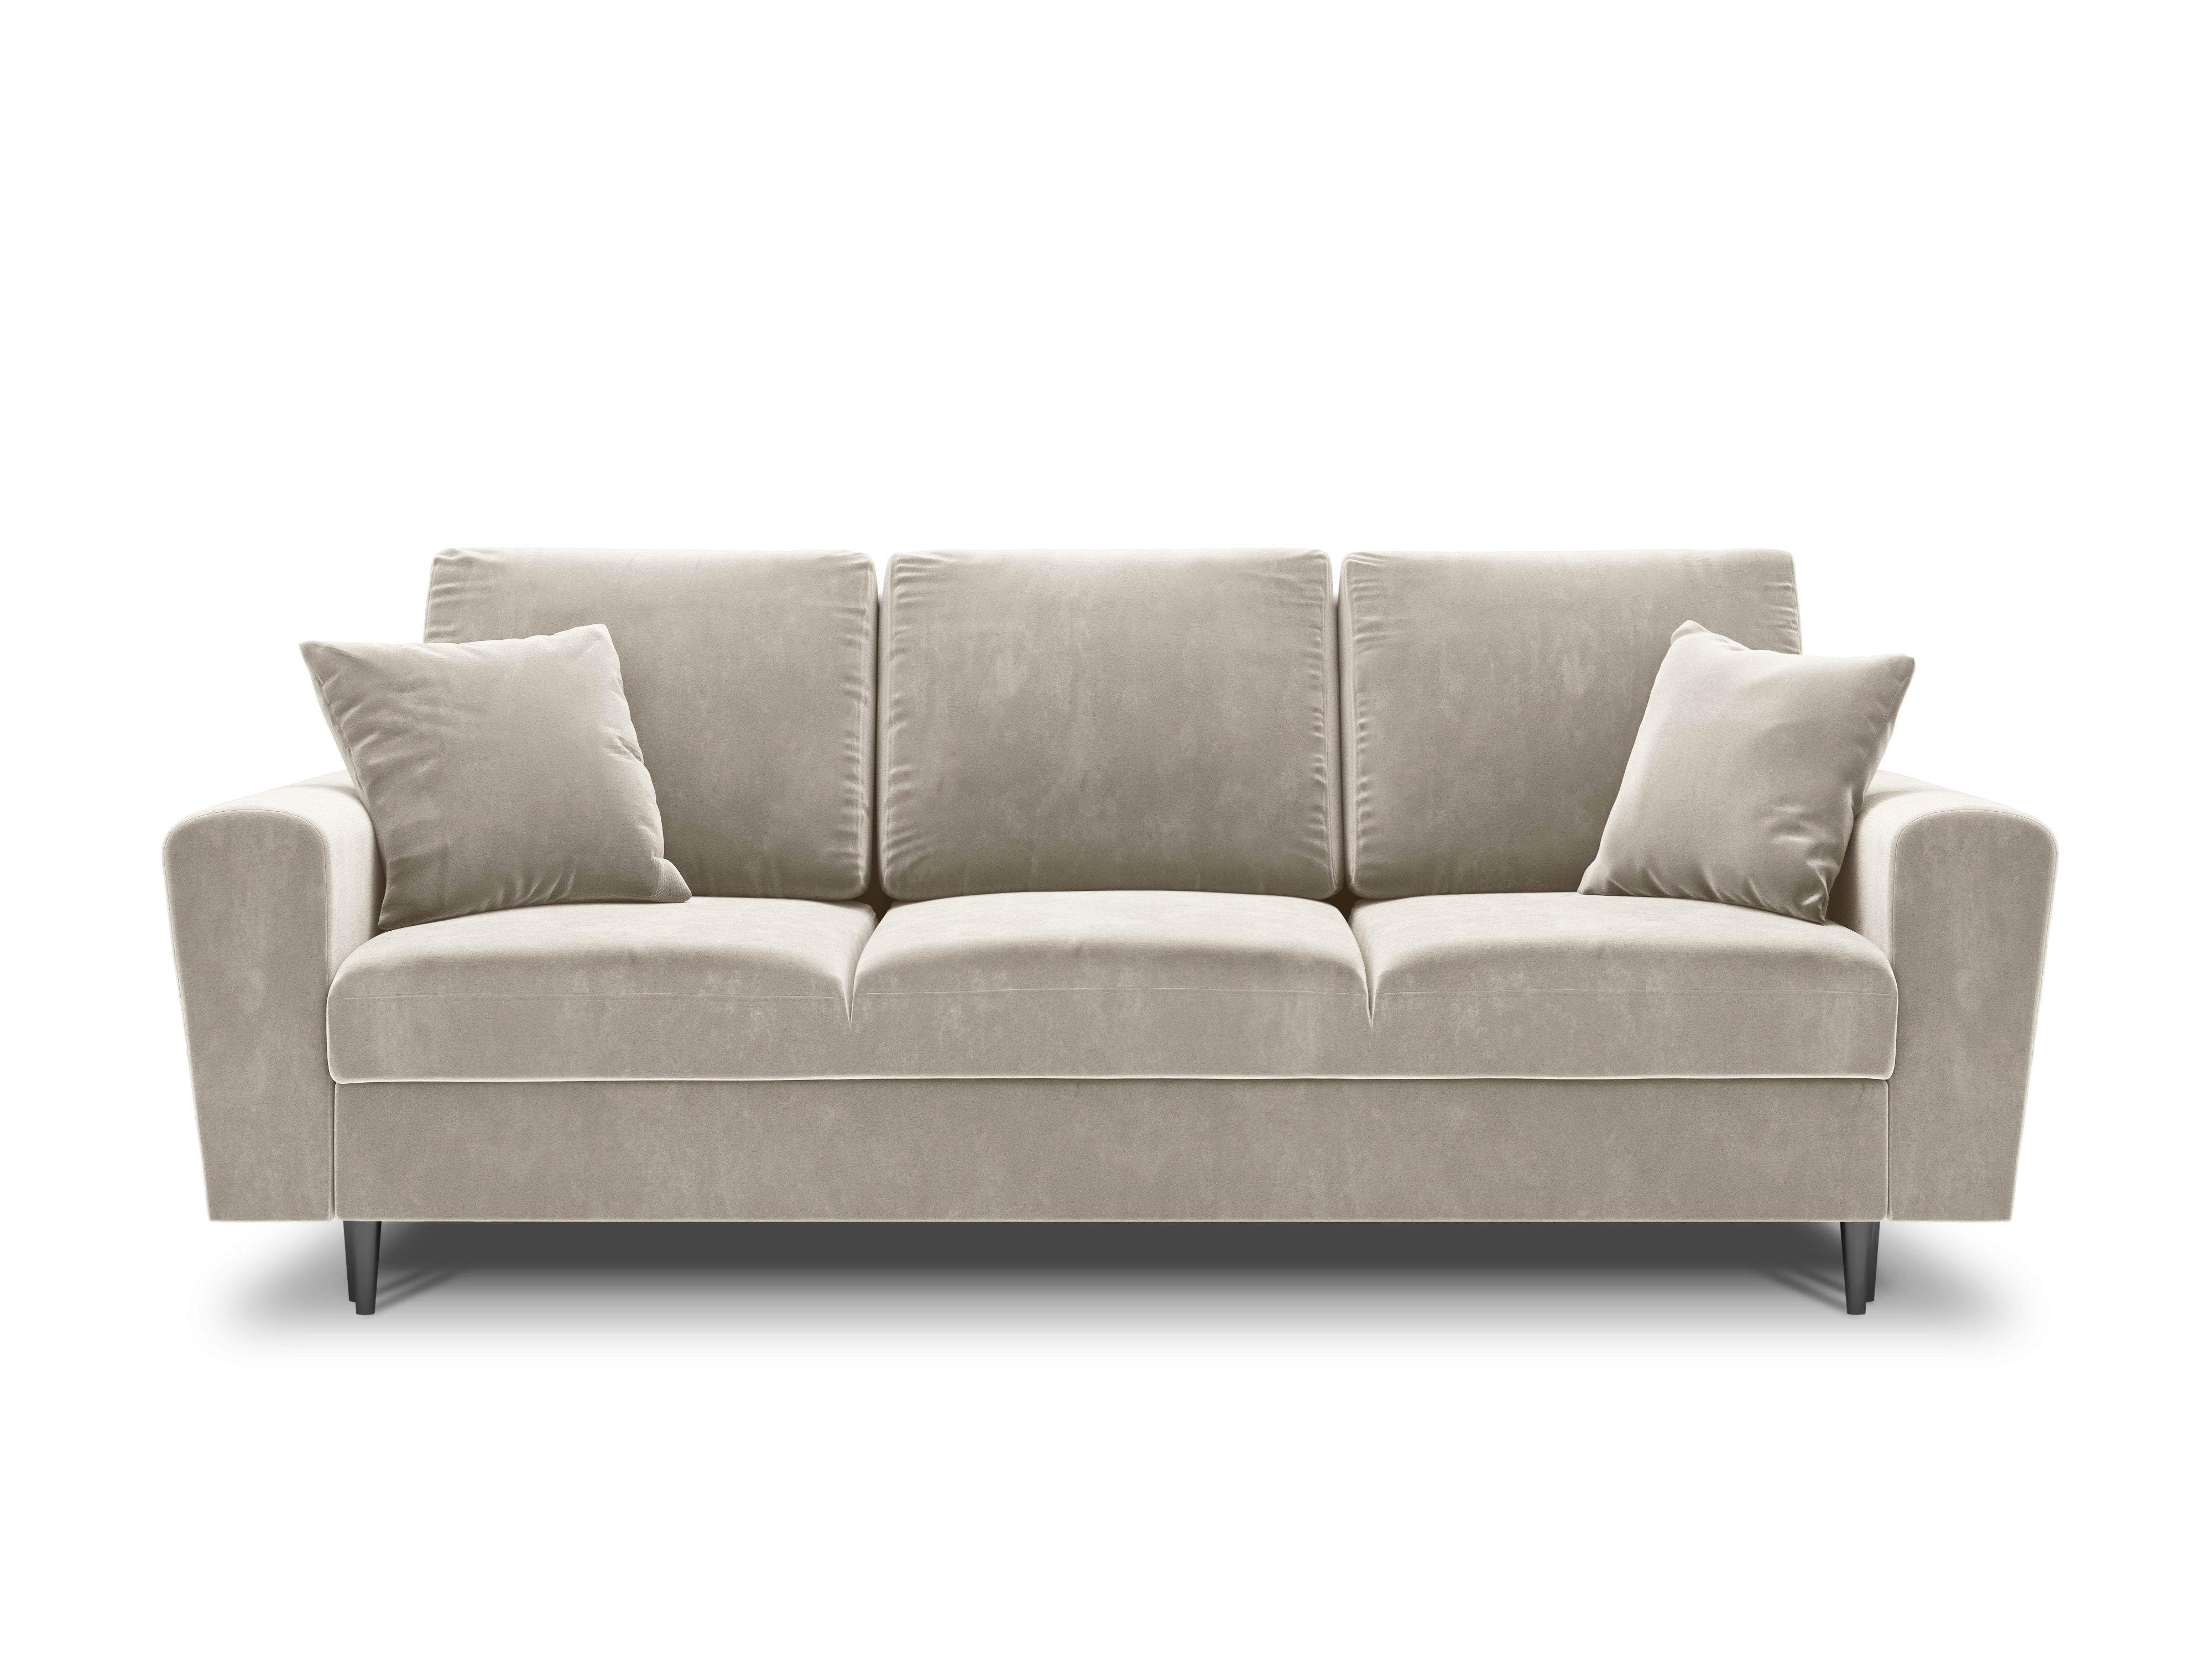 Velvet beige sofa with pillows